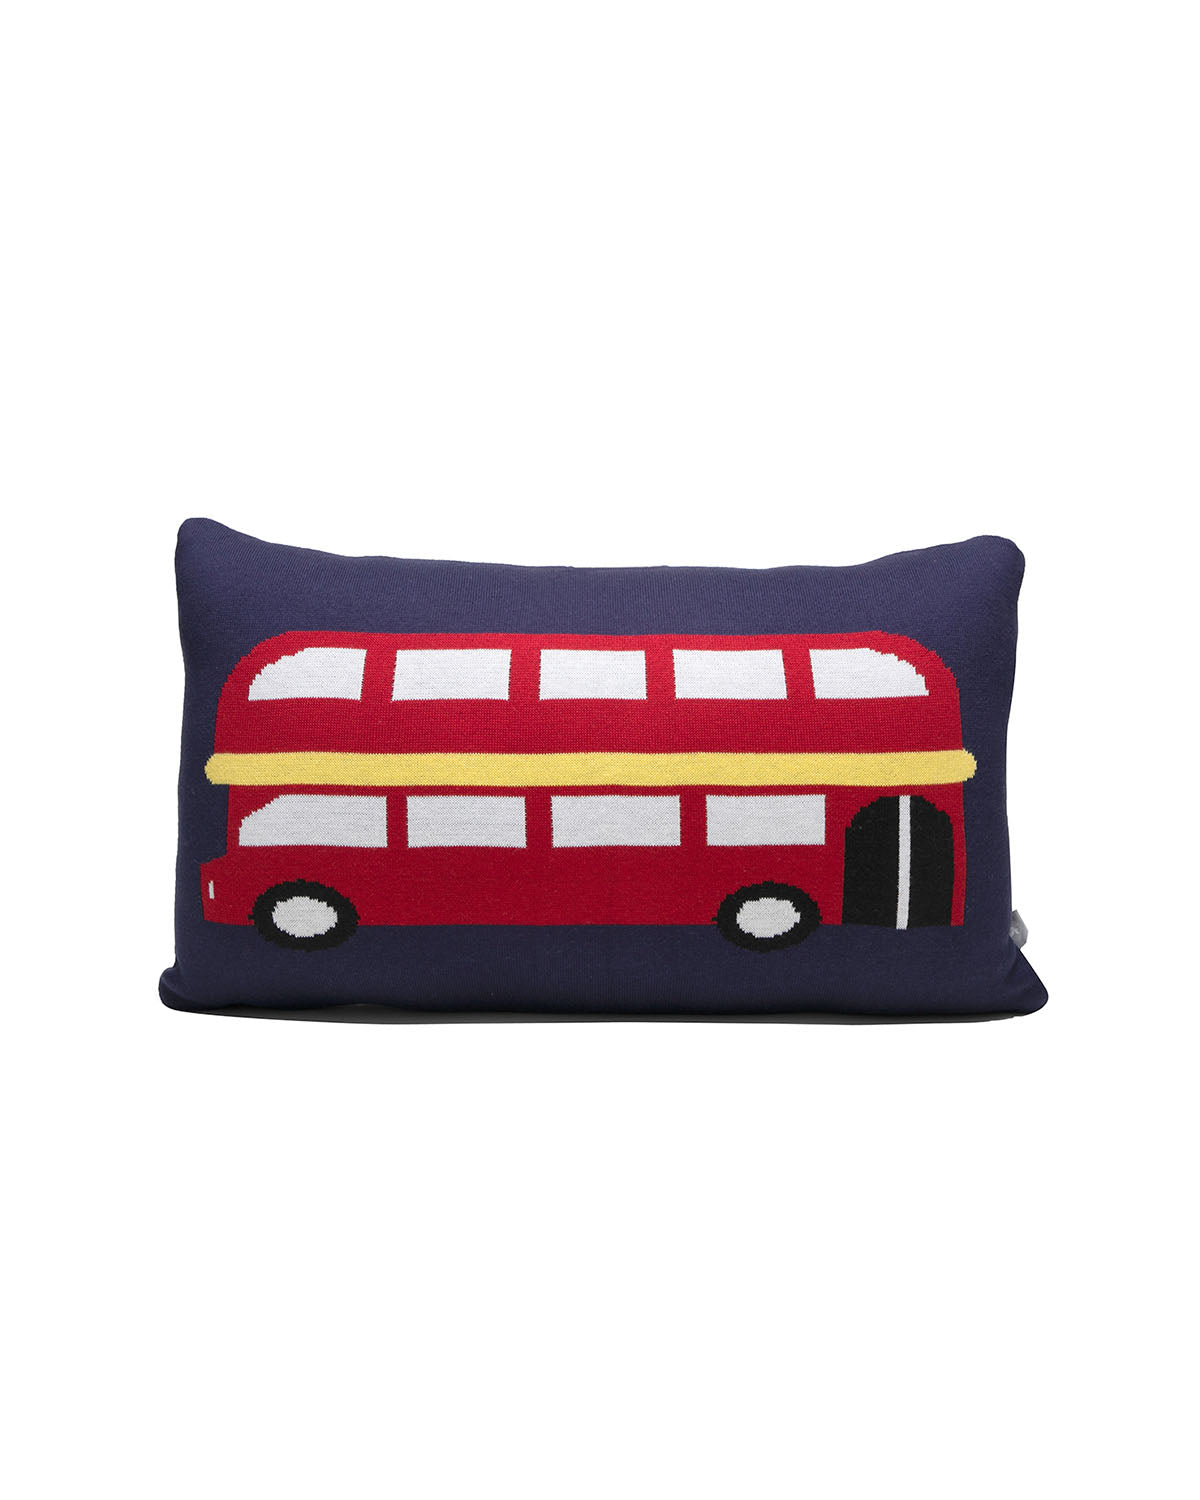 Cushion LONDON DOUBLE DECKER BUS